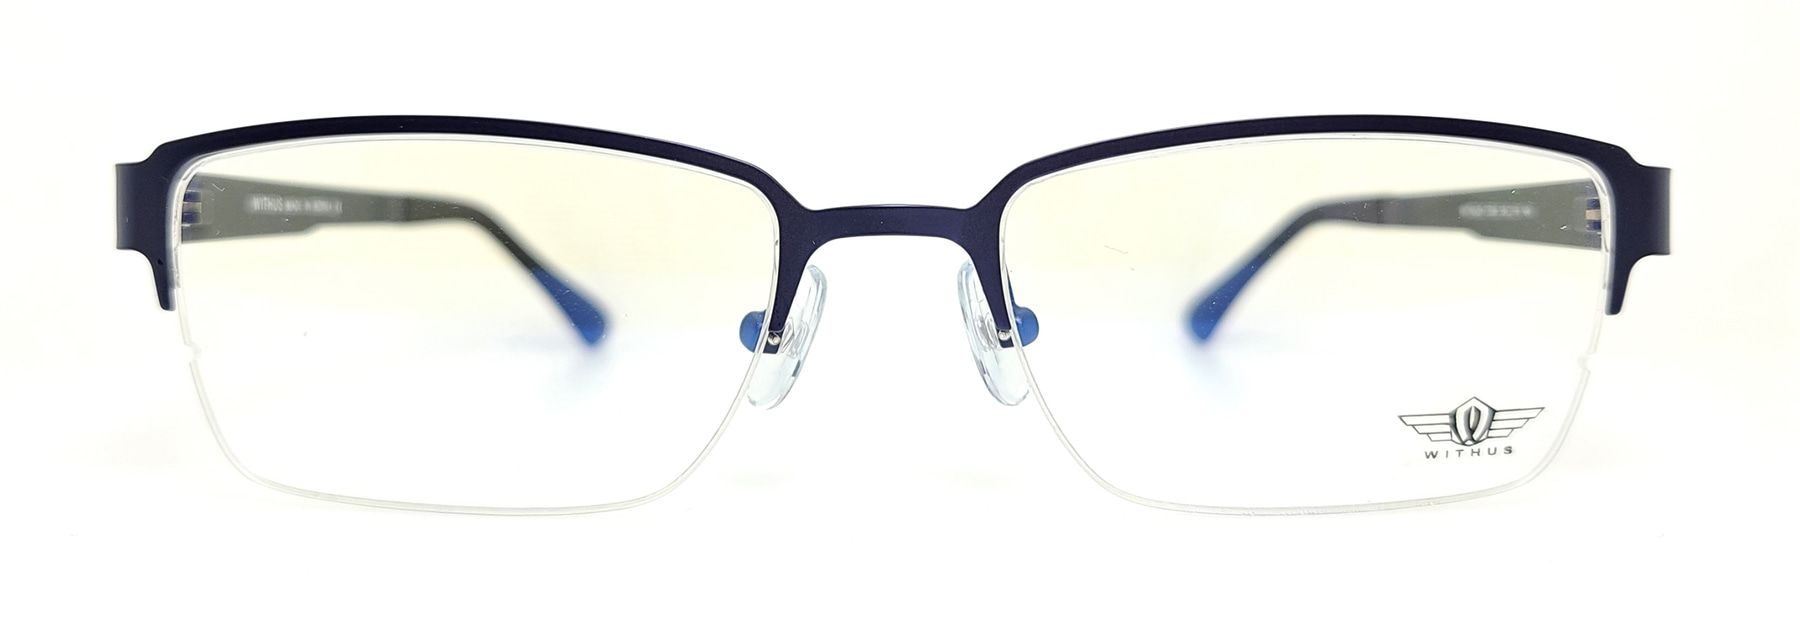 WITHUS-7356, Korean glasses, sunglasses, eyeglasses, glasses